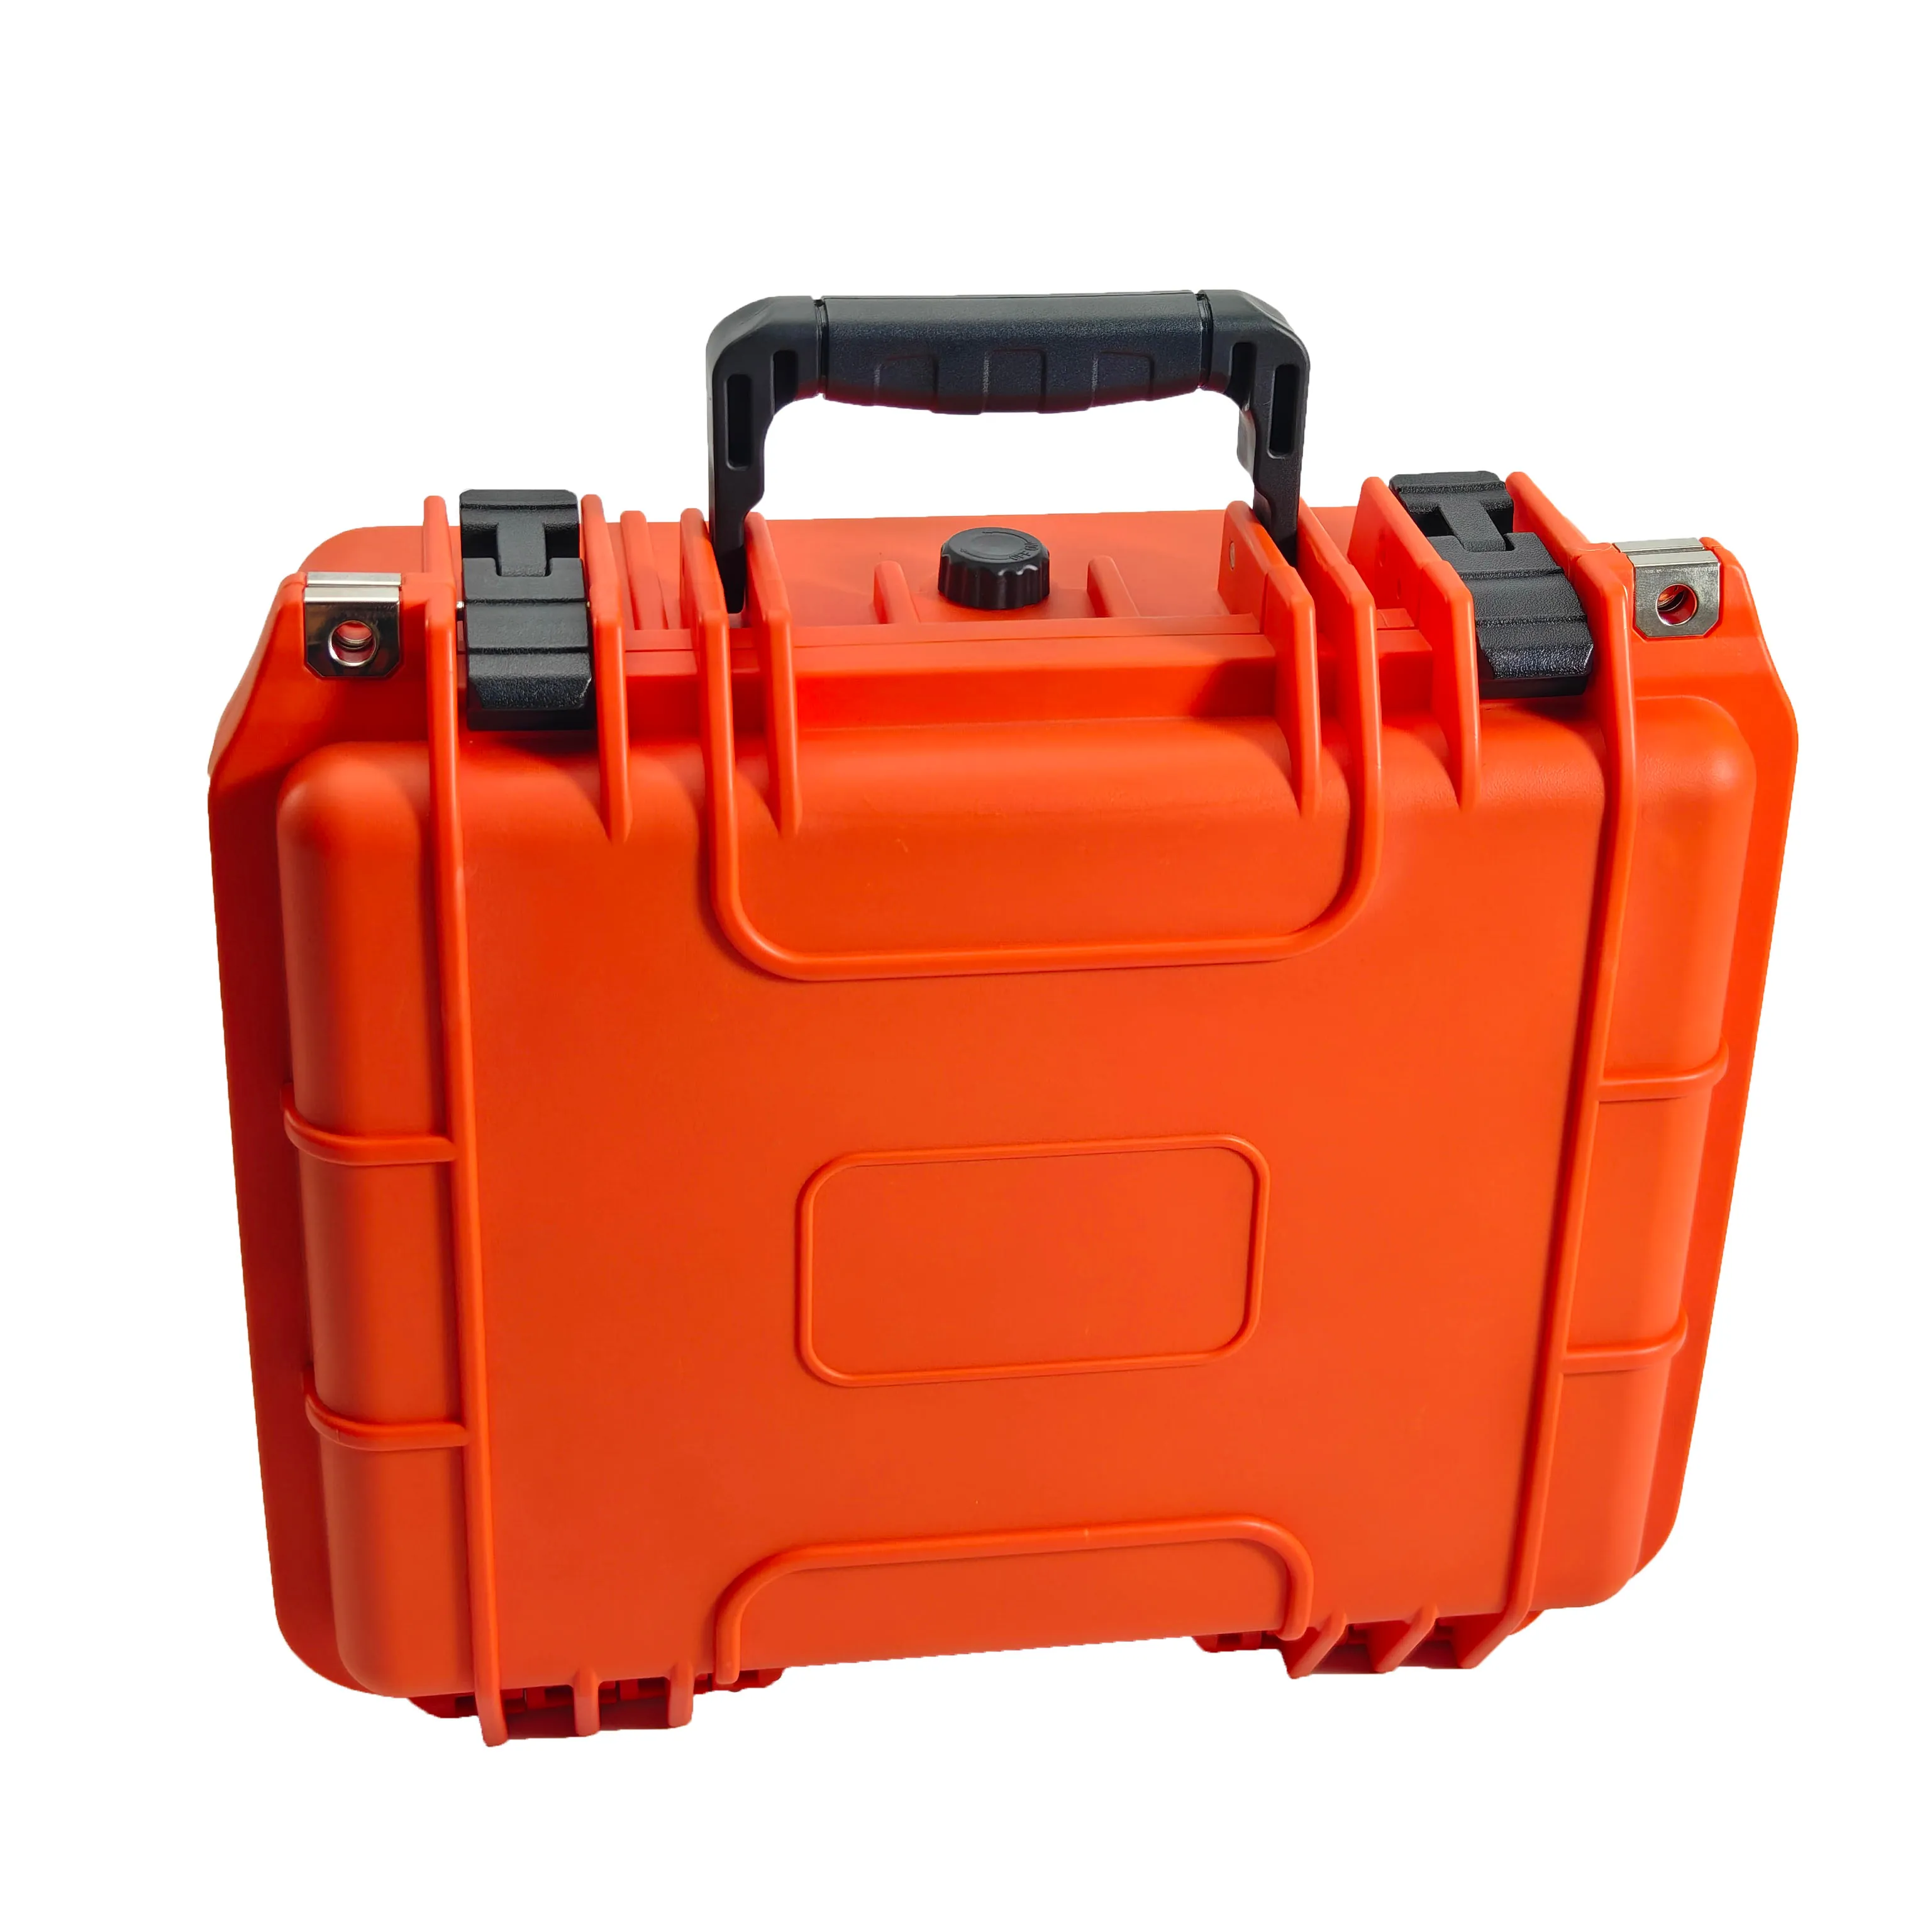 Orange color IP67 waterproof Dustproof Shockproof tool box portable Hard plastic case